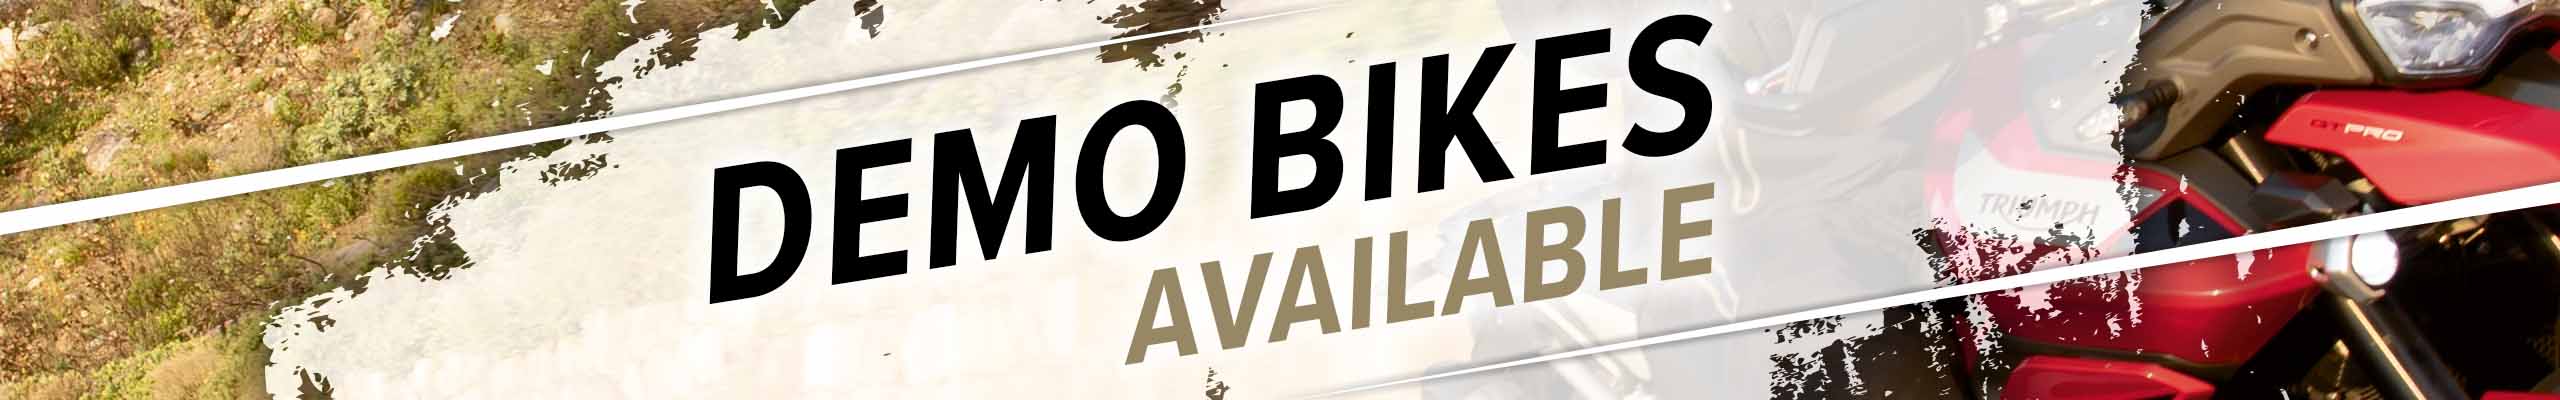 Book a Demo Ride at Laguna Motorcycles